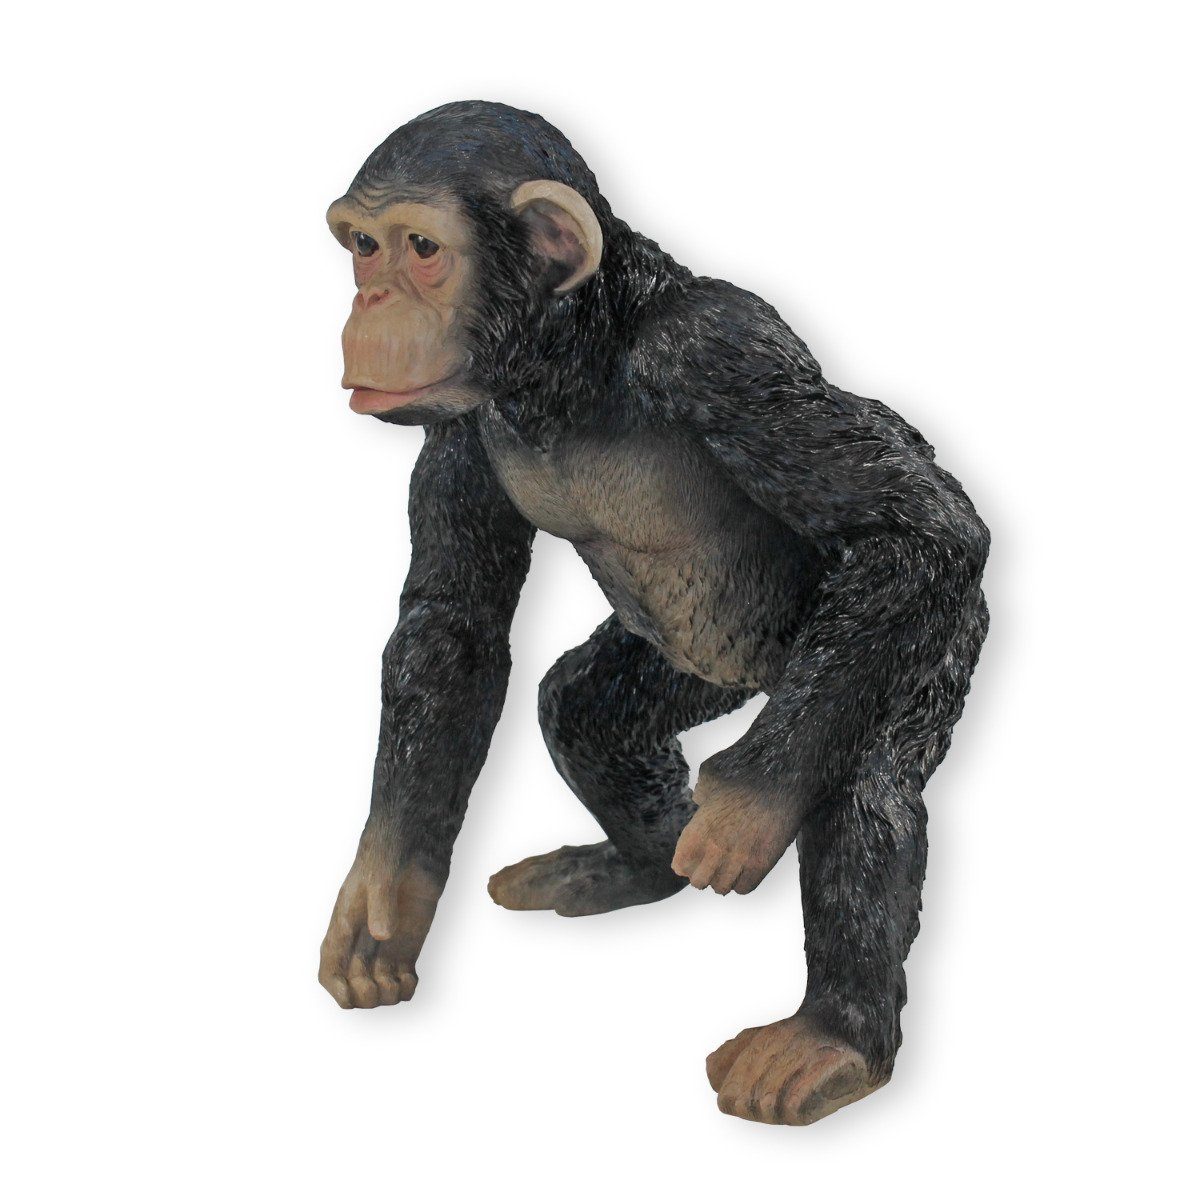 Detailgetreu Wetterfest, Tierfigur jung Schimpanse Handbemalt, Figur Affe Deko colourliving Affe Deko Tier,